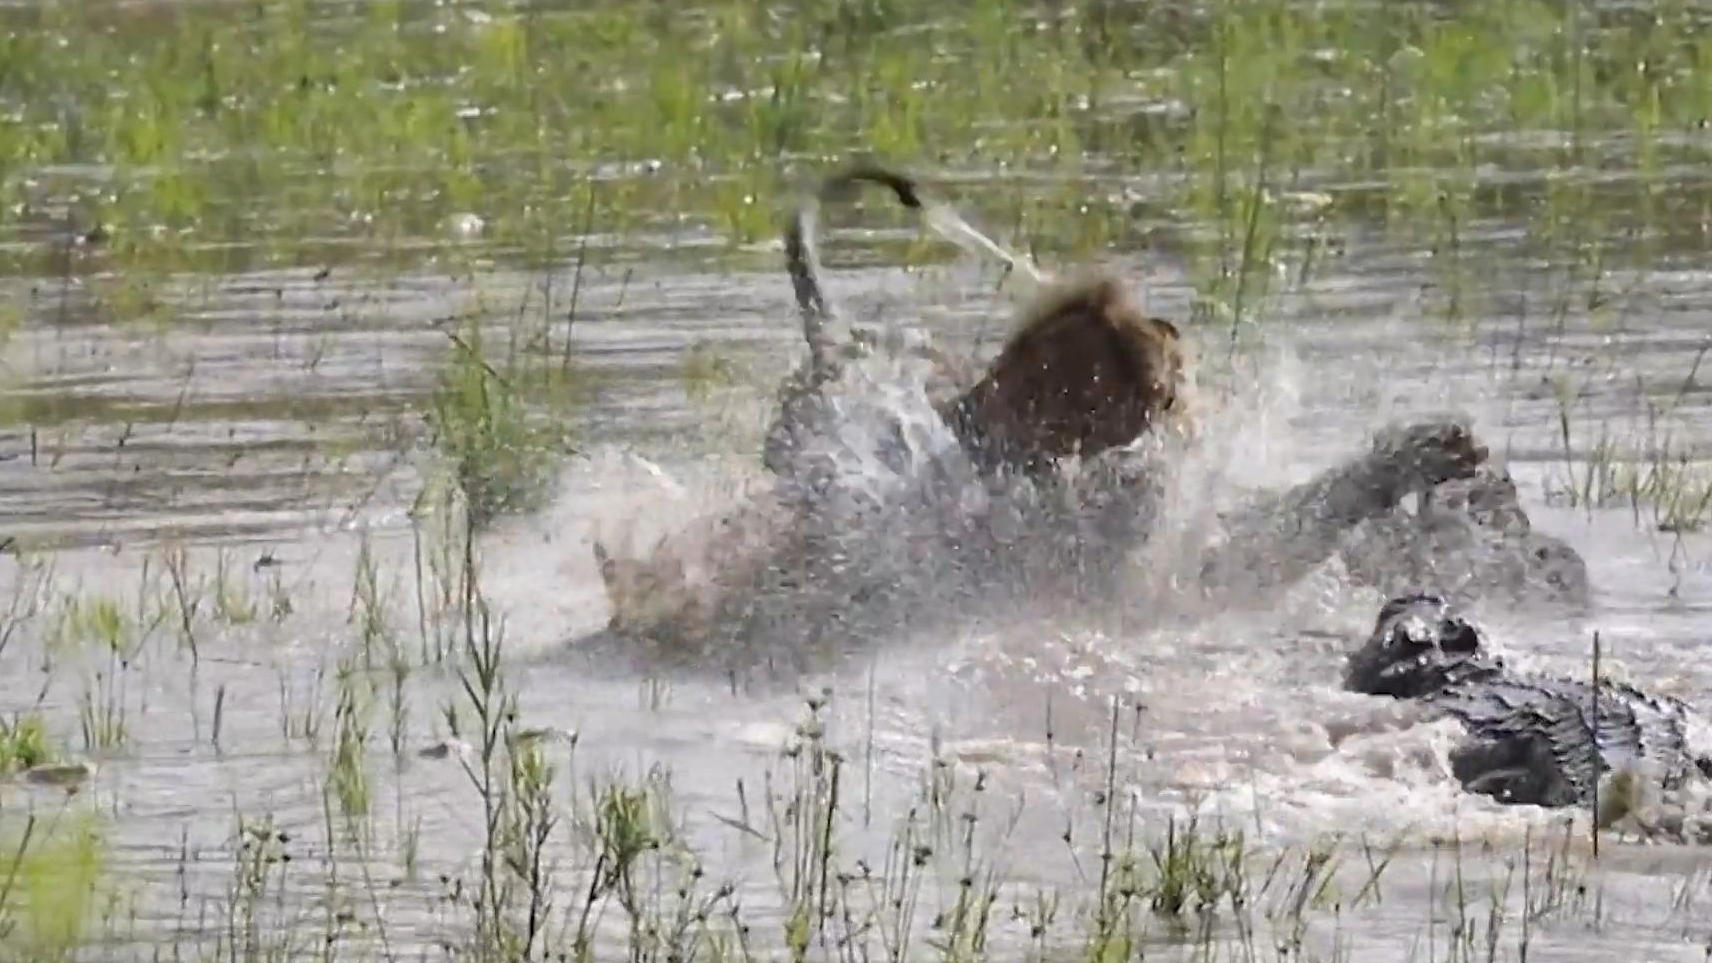 Löwe und Krokodil liefern sich spektakulären Beute-Fight Kampf der Raubtiere!